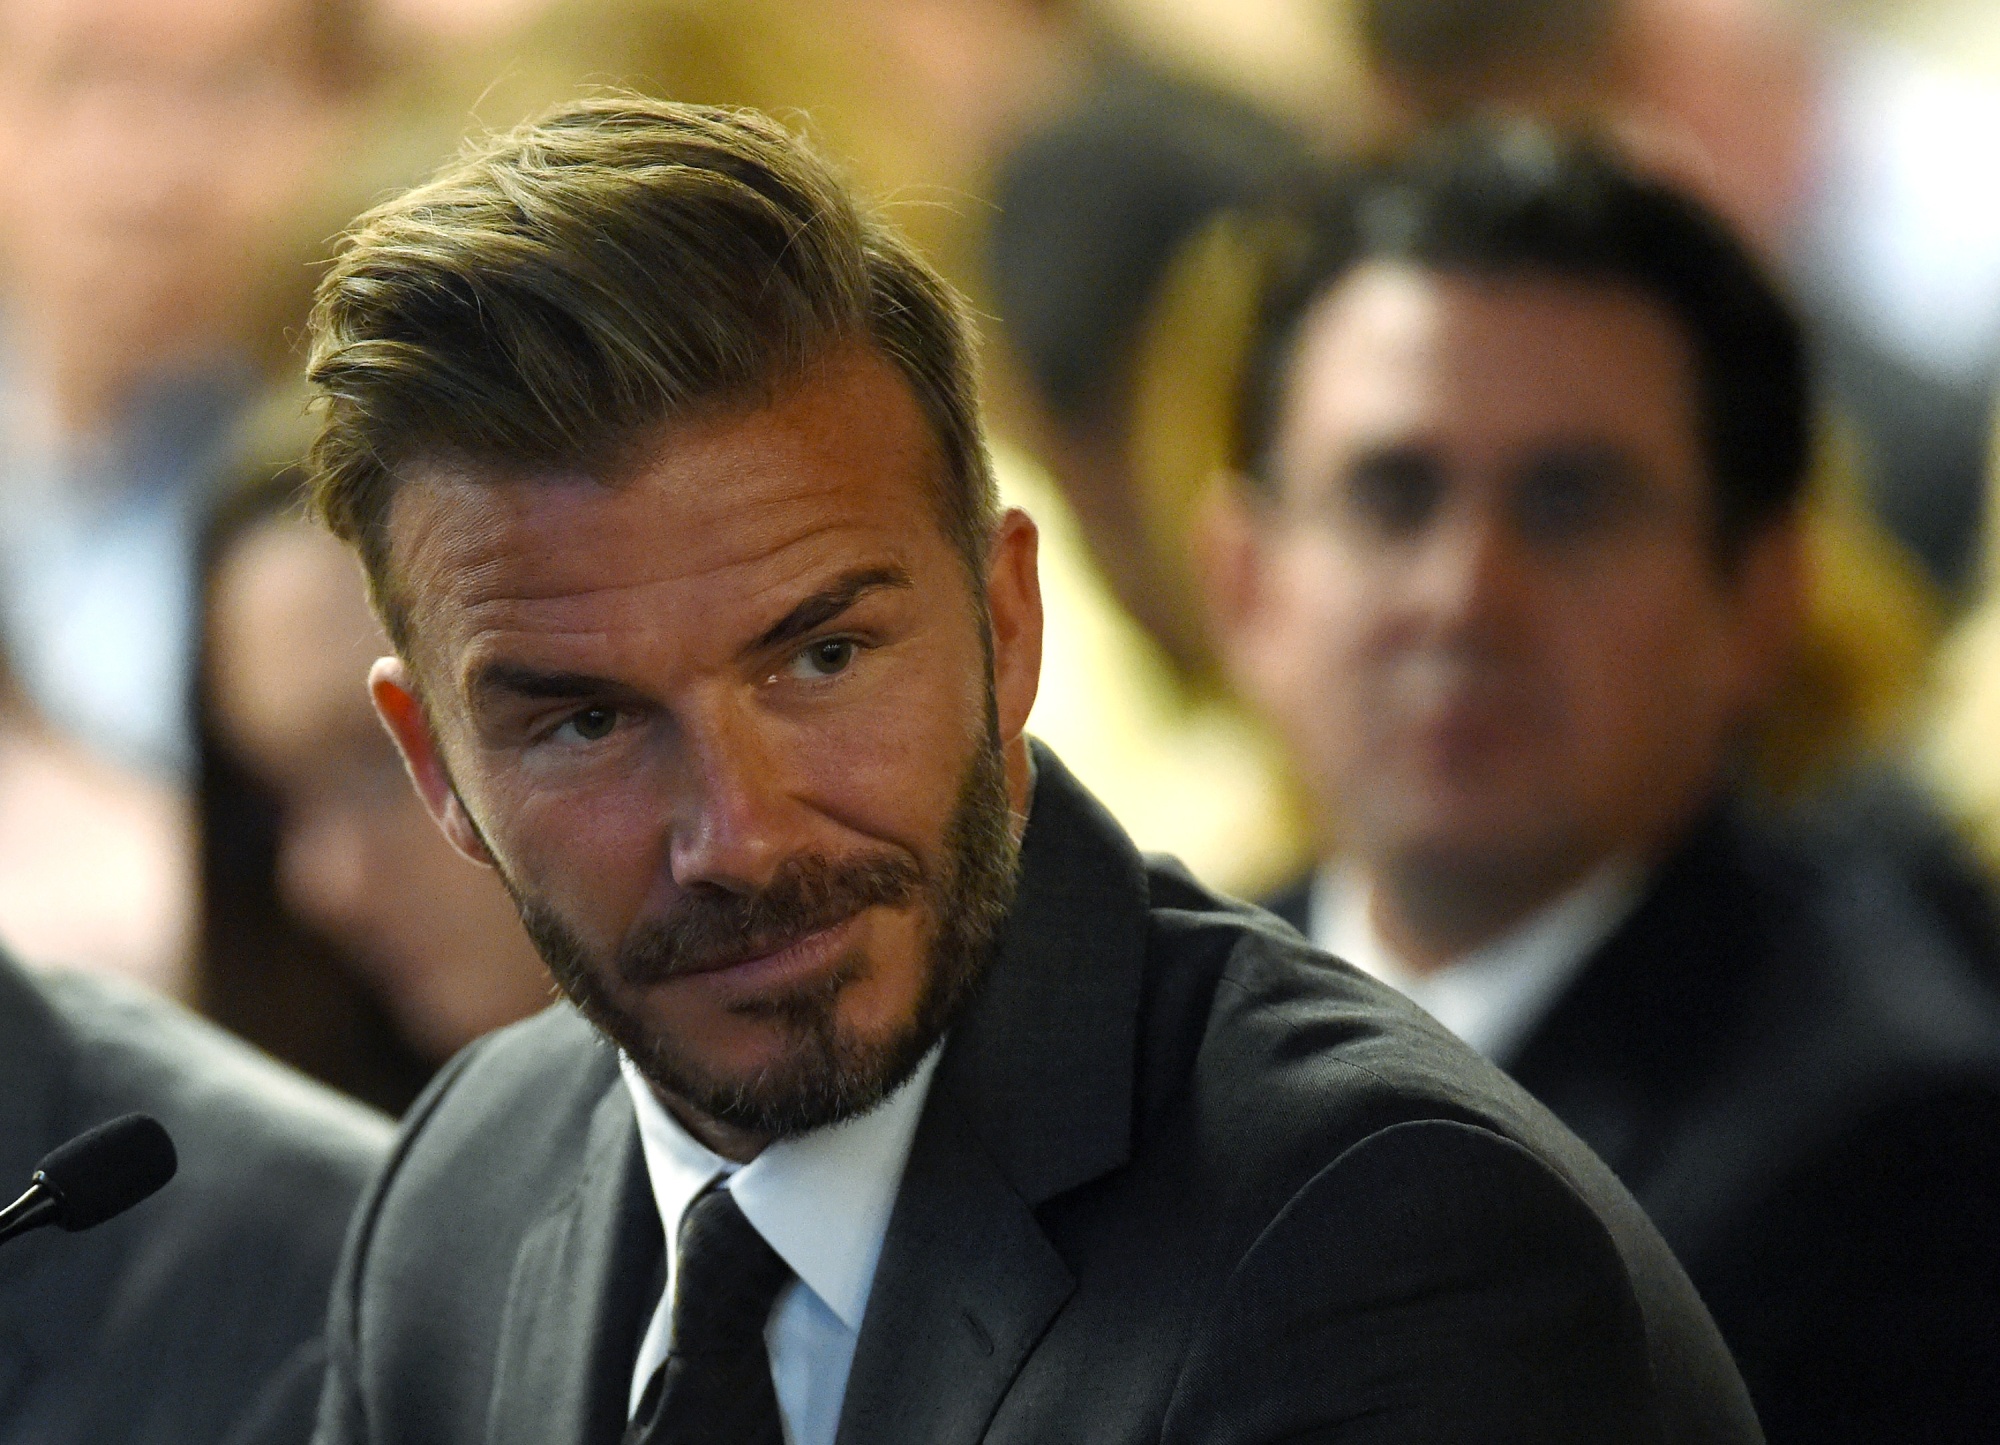 David Beckham Sees Opportunity in Las Vegas Sports Scene - Bloomberg